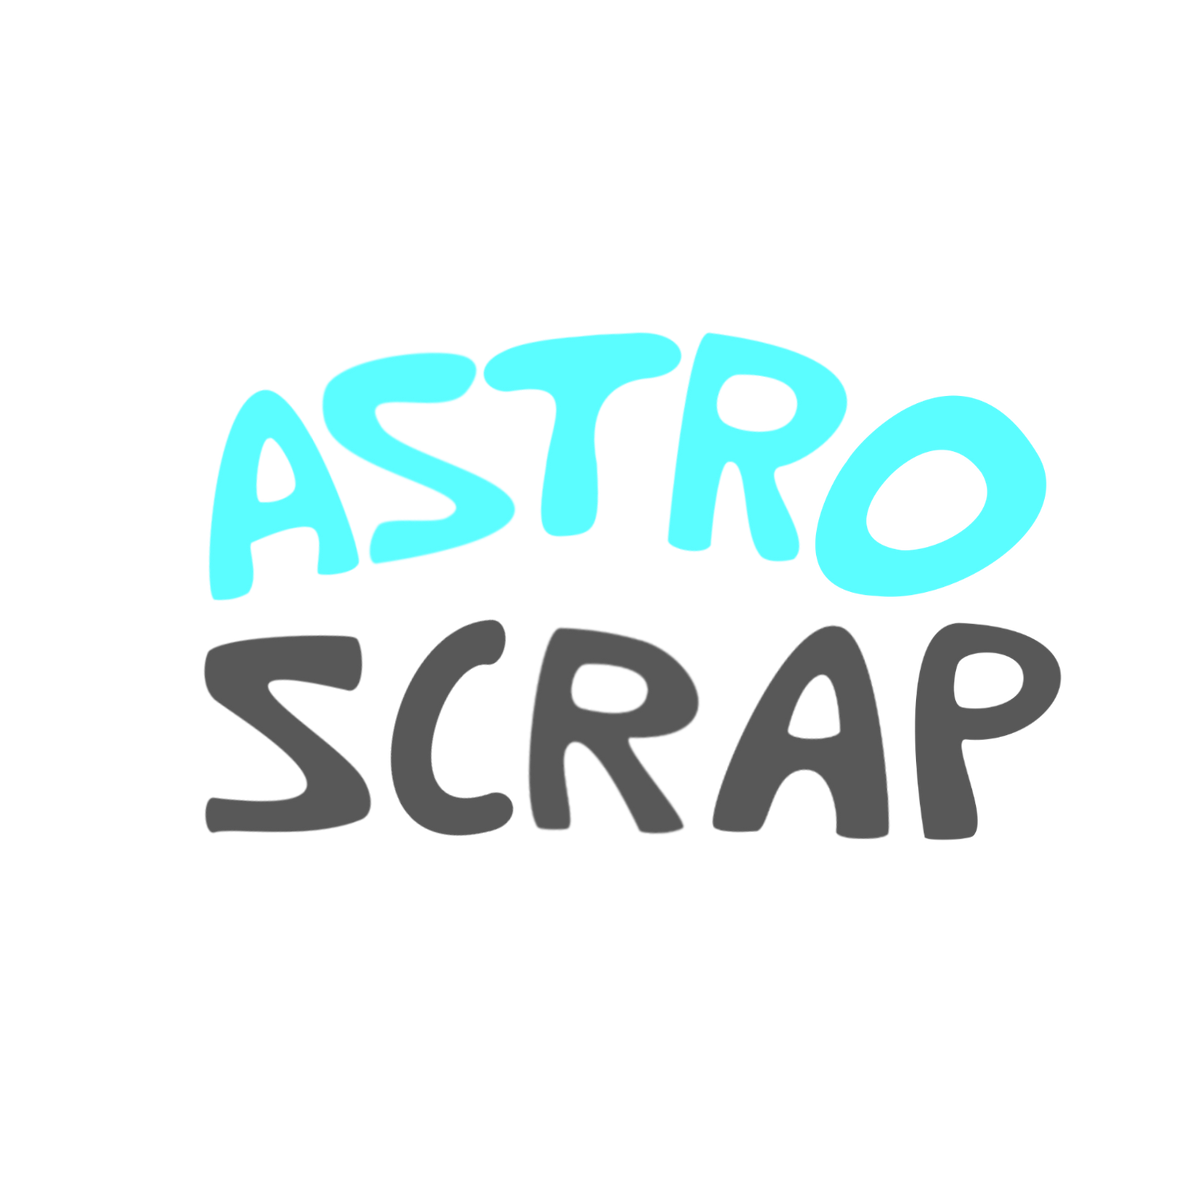 Astro Scrap